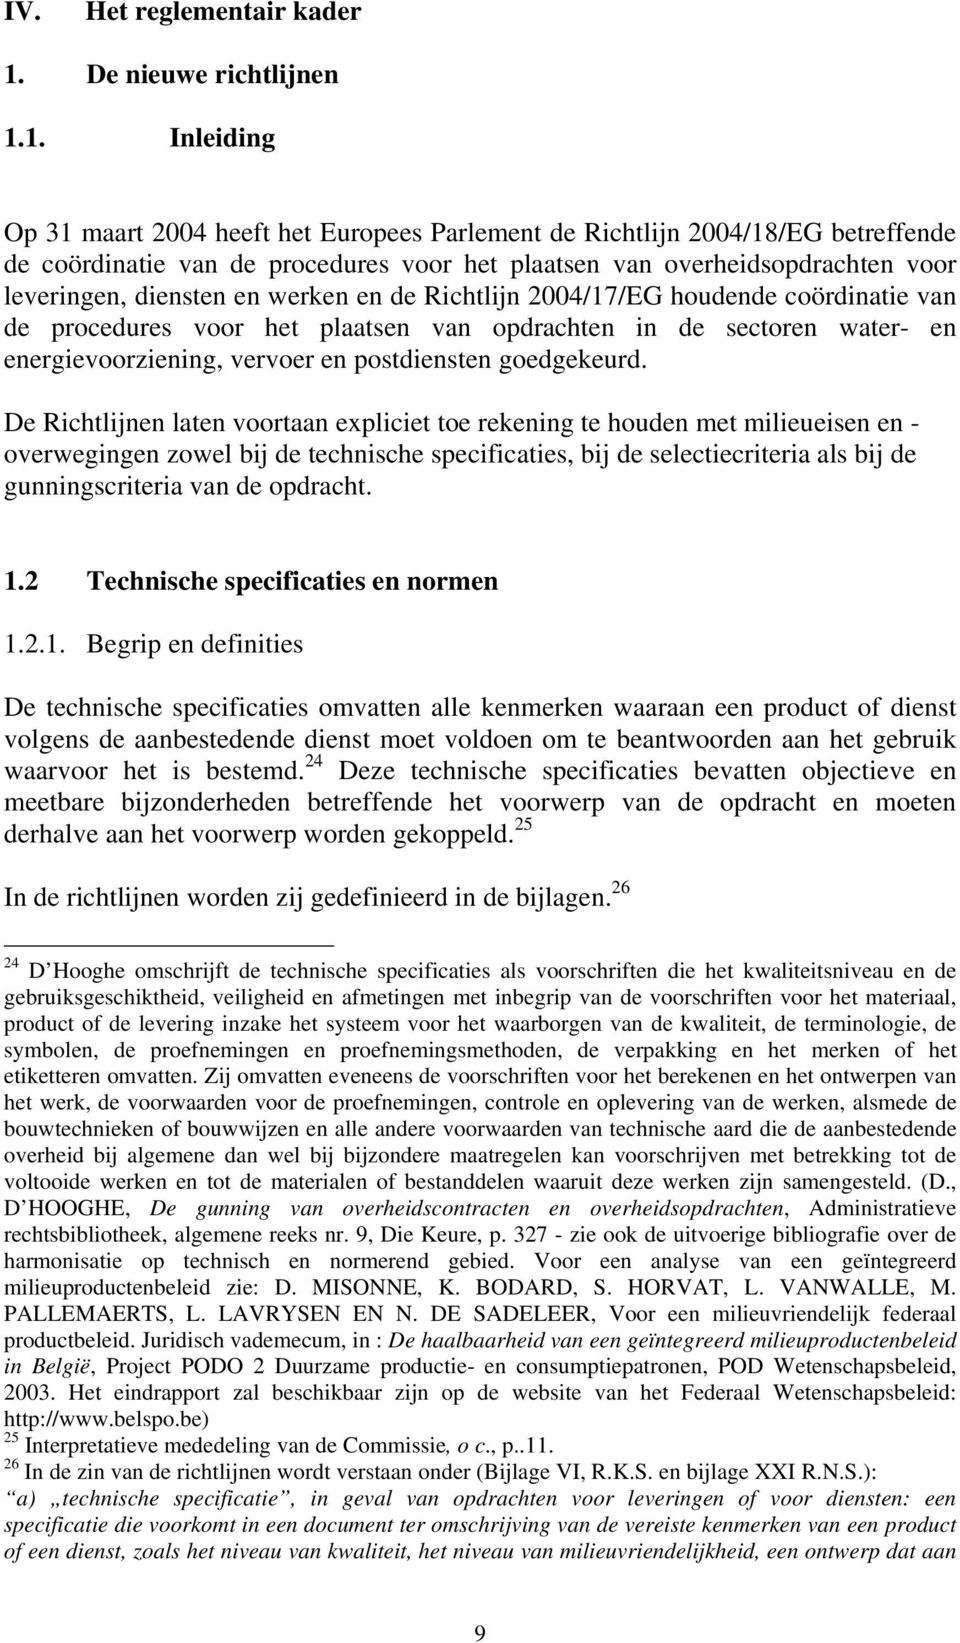 1. Inleiding Op 31 maart 2004 heeft het Europees Parlement de Richtlijn 2004/18/EG betreffende de coördinatie van de procedures voor het plaatsen van overheidsopdrachten voor leveringen, diensten en